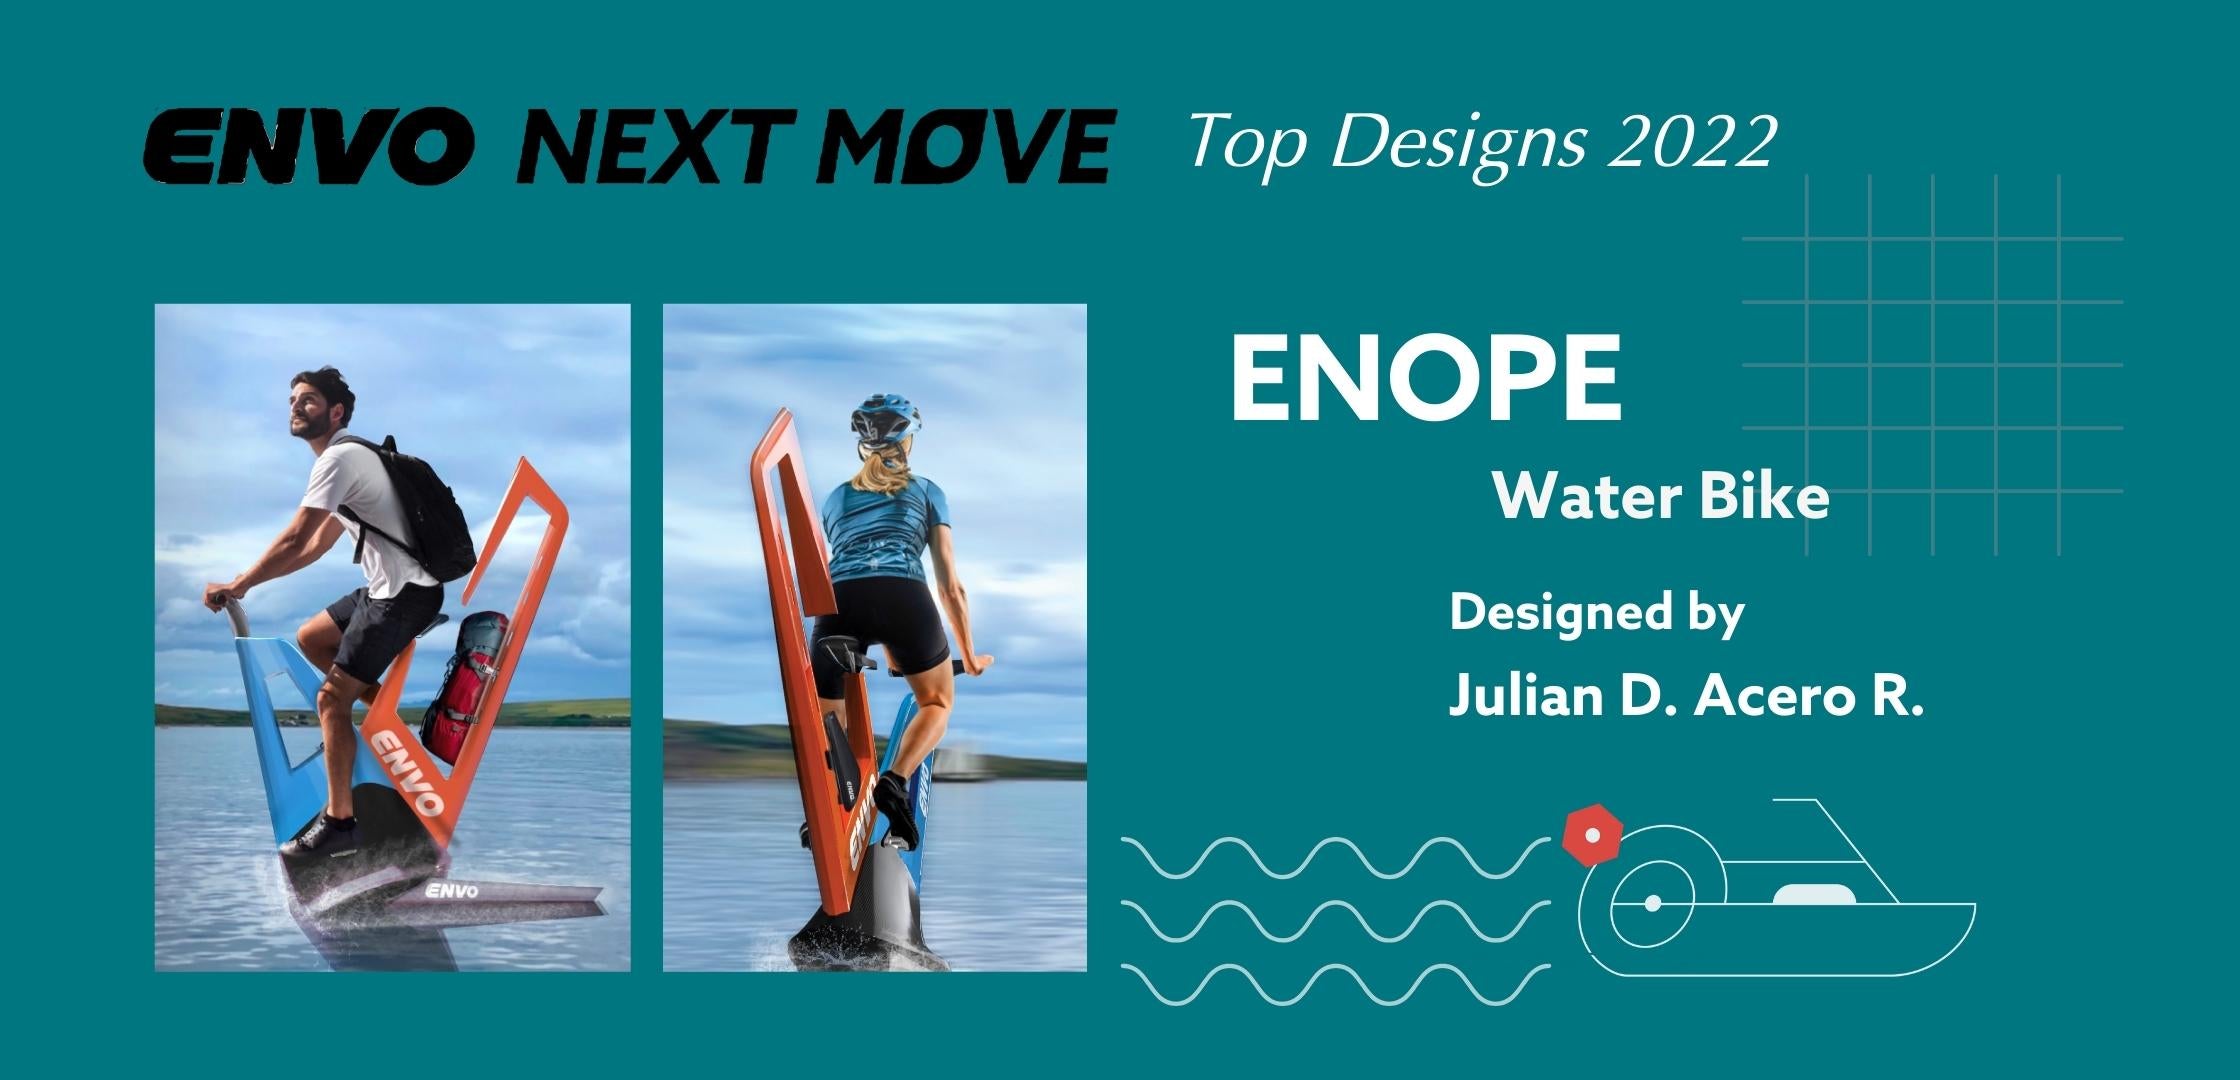 ENVO NEXT MOVE: EXOTIC DESIGNS 2022:ENOPE Water Bike: Beyond Boundaries